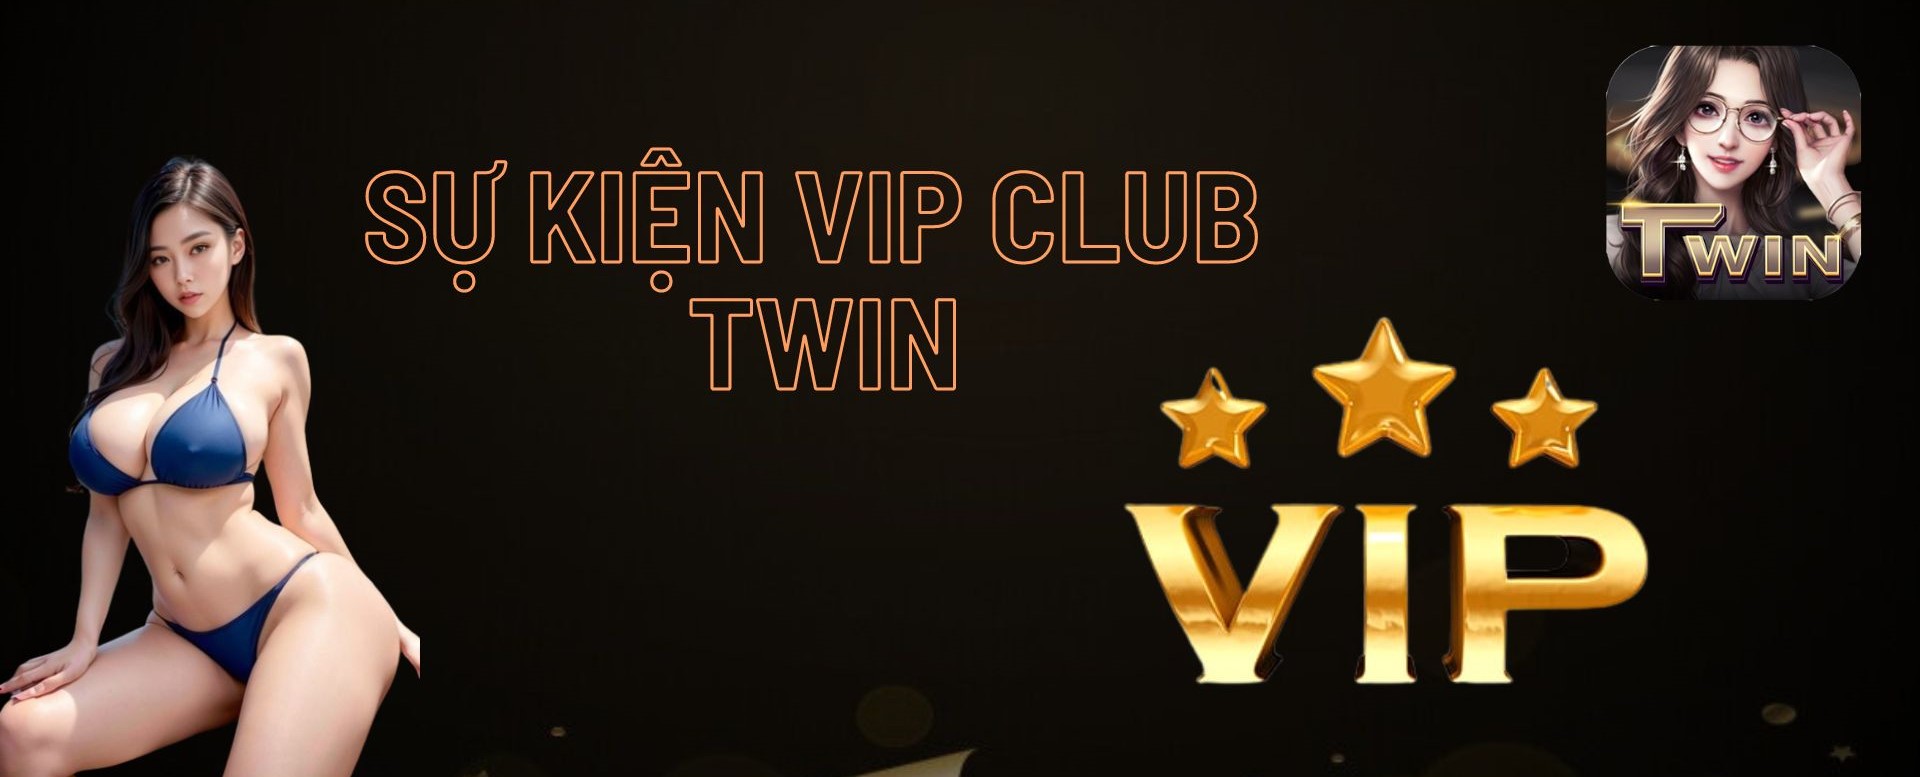 Sự kiện khuyến mãi VIP Club tại TWIN